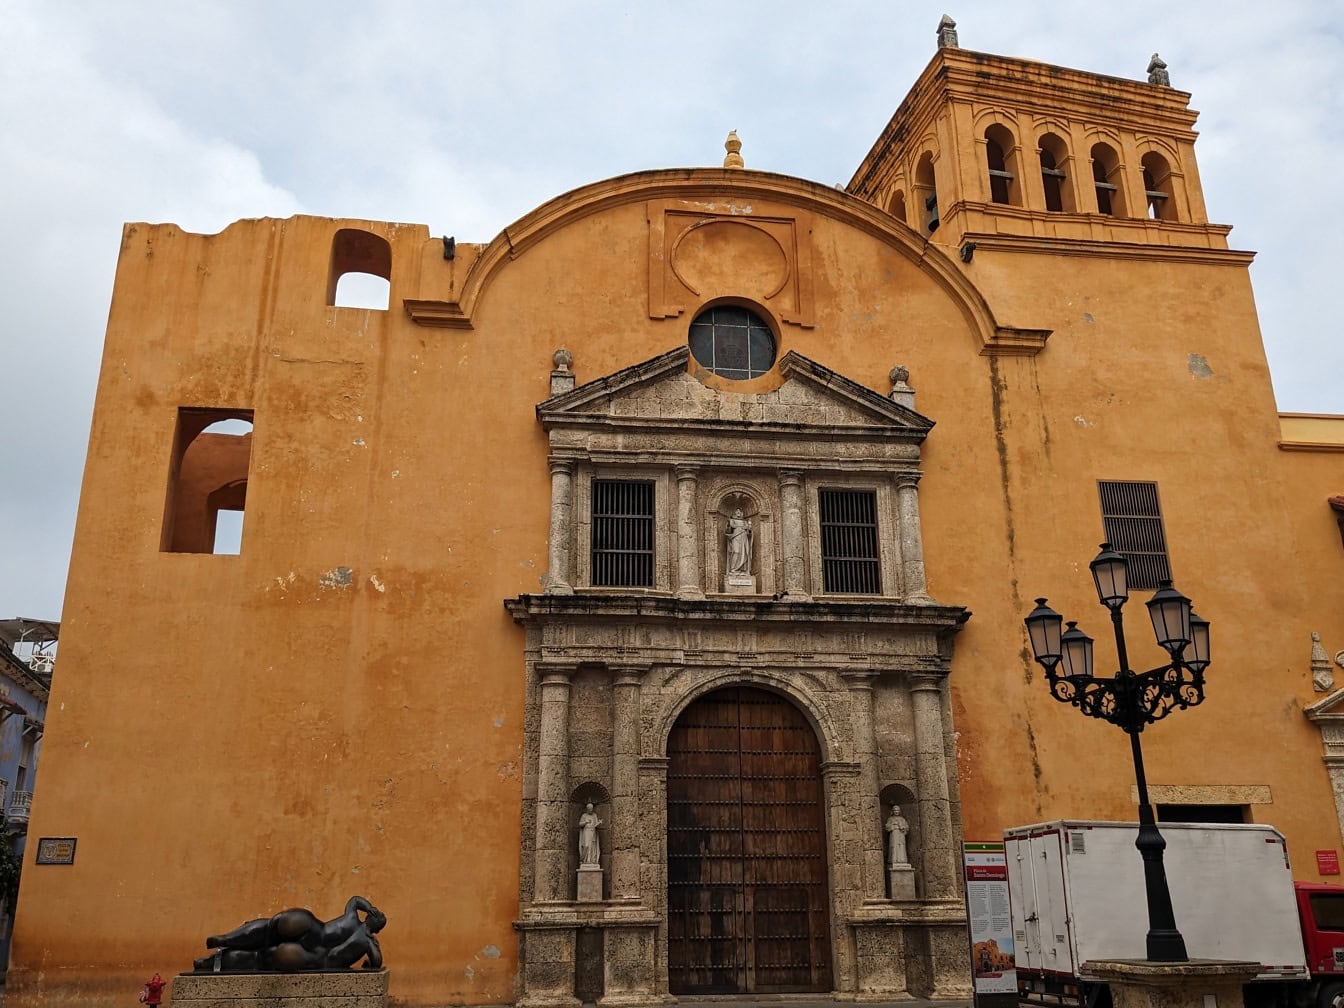 Kostel a klášter Santo Domingo známý jako kostel San Daniel ve městě Cartagena de Indias v Kolumbii v Jižní Americe